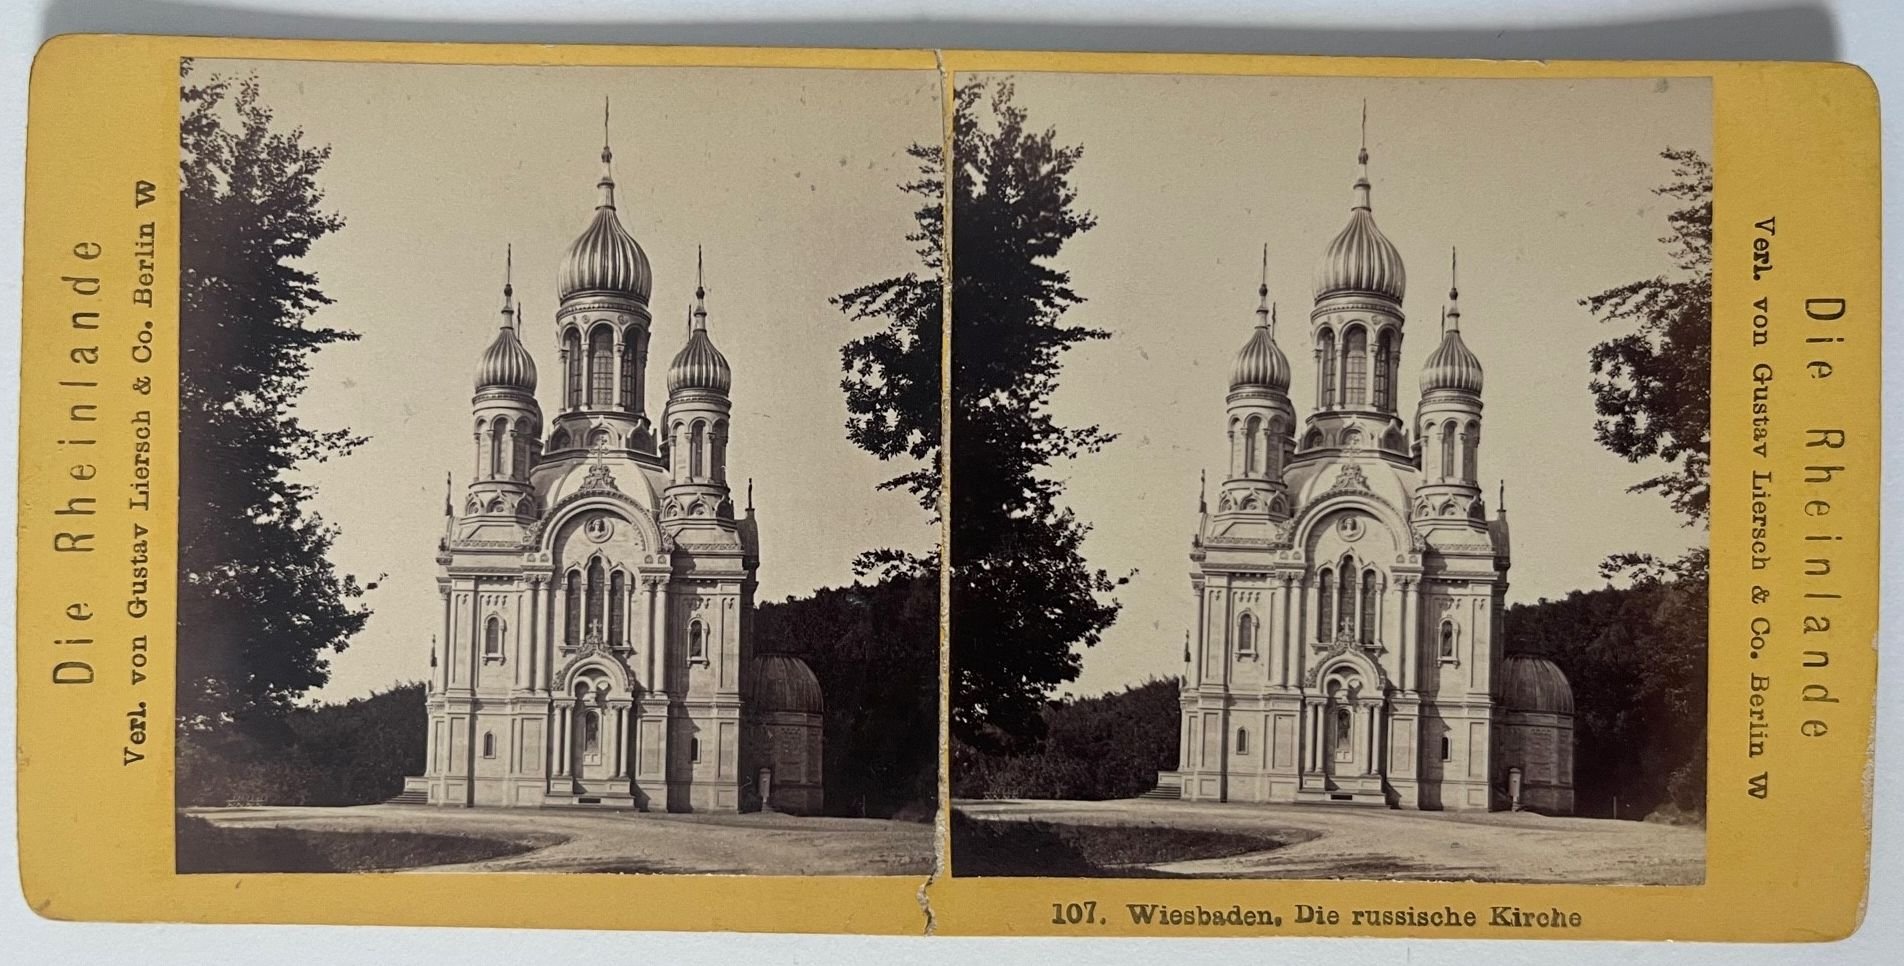 Die Rheinlande, Nr. 107, Wiesbaden, Die russische Kirche, ca. 1900 (Taunus-Rhein-Main - Regionalgeschichtliche Sammlung Dr. Stefan Naas CC BY-NC-SA)